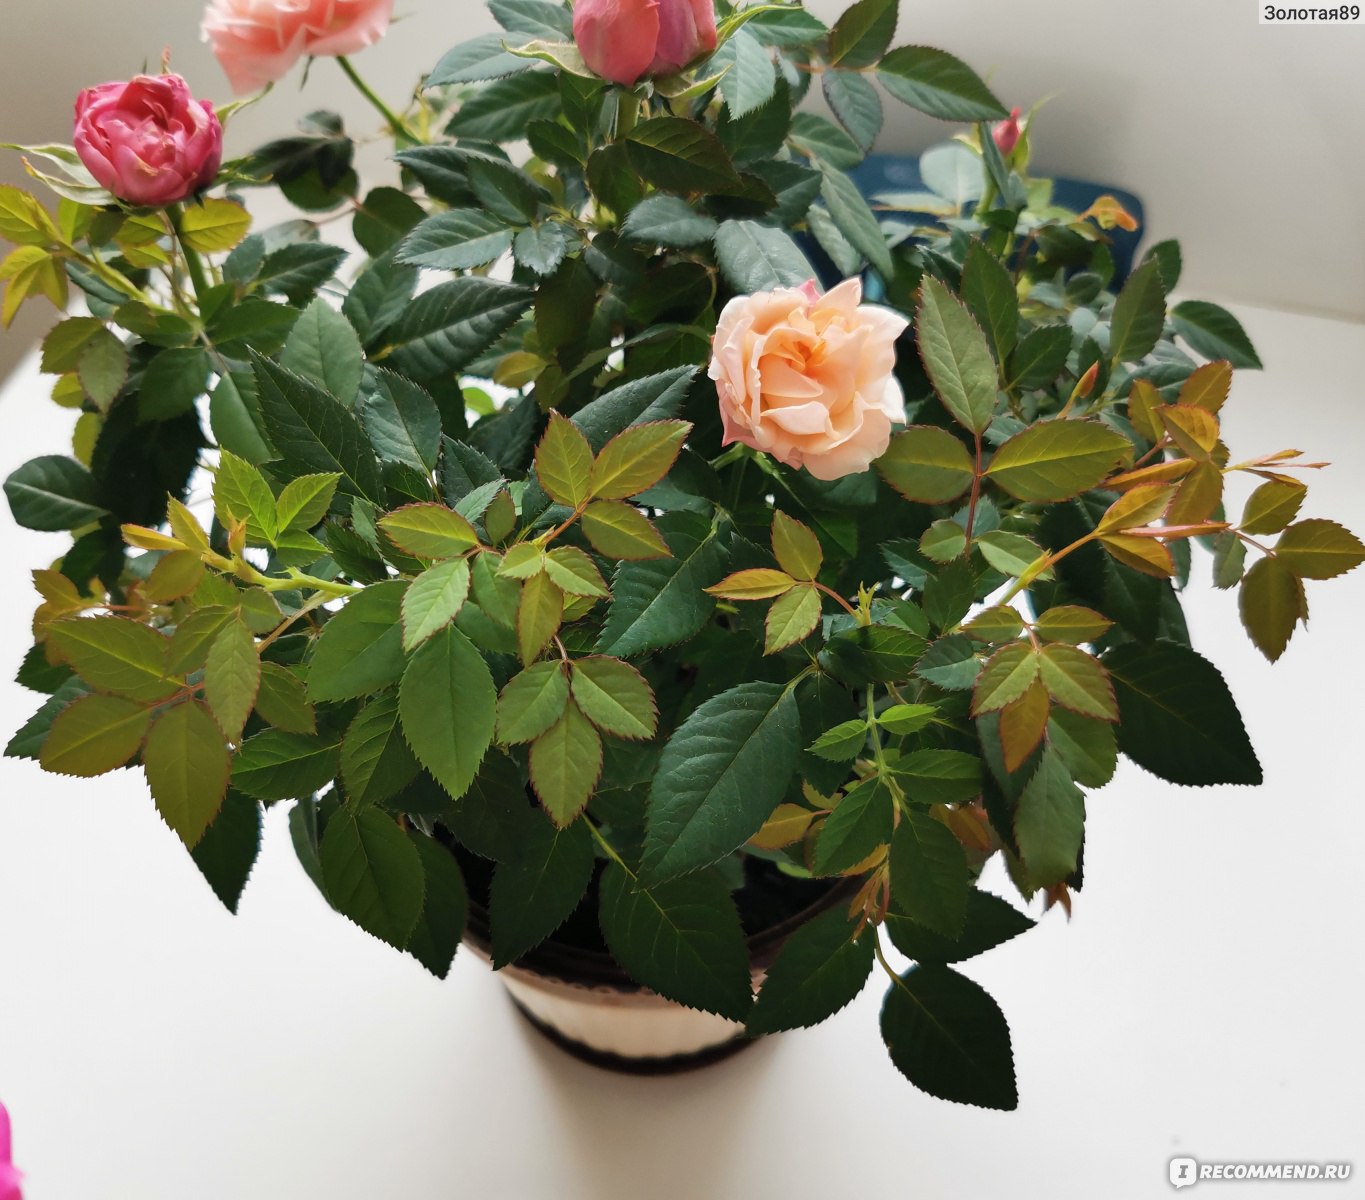 Особенности посадки розы кордана в домашних условиях после покупки и правила ухода за ней